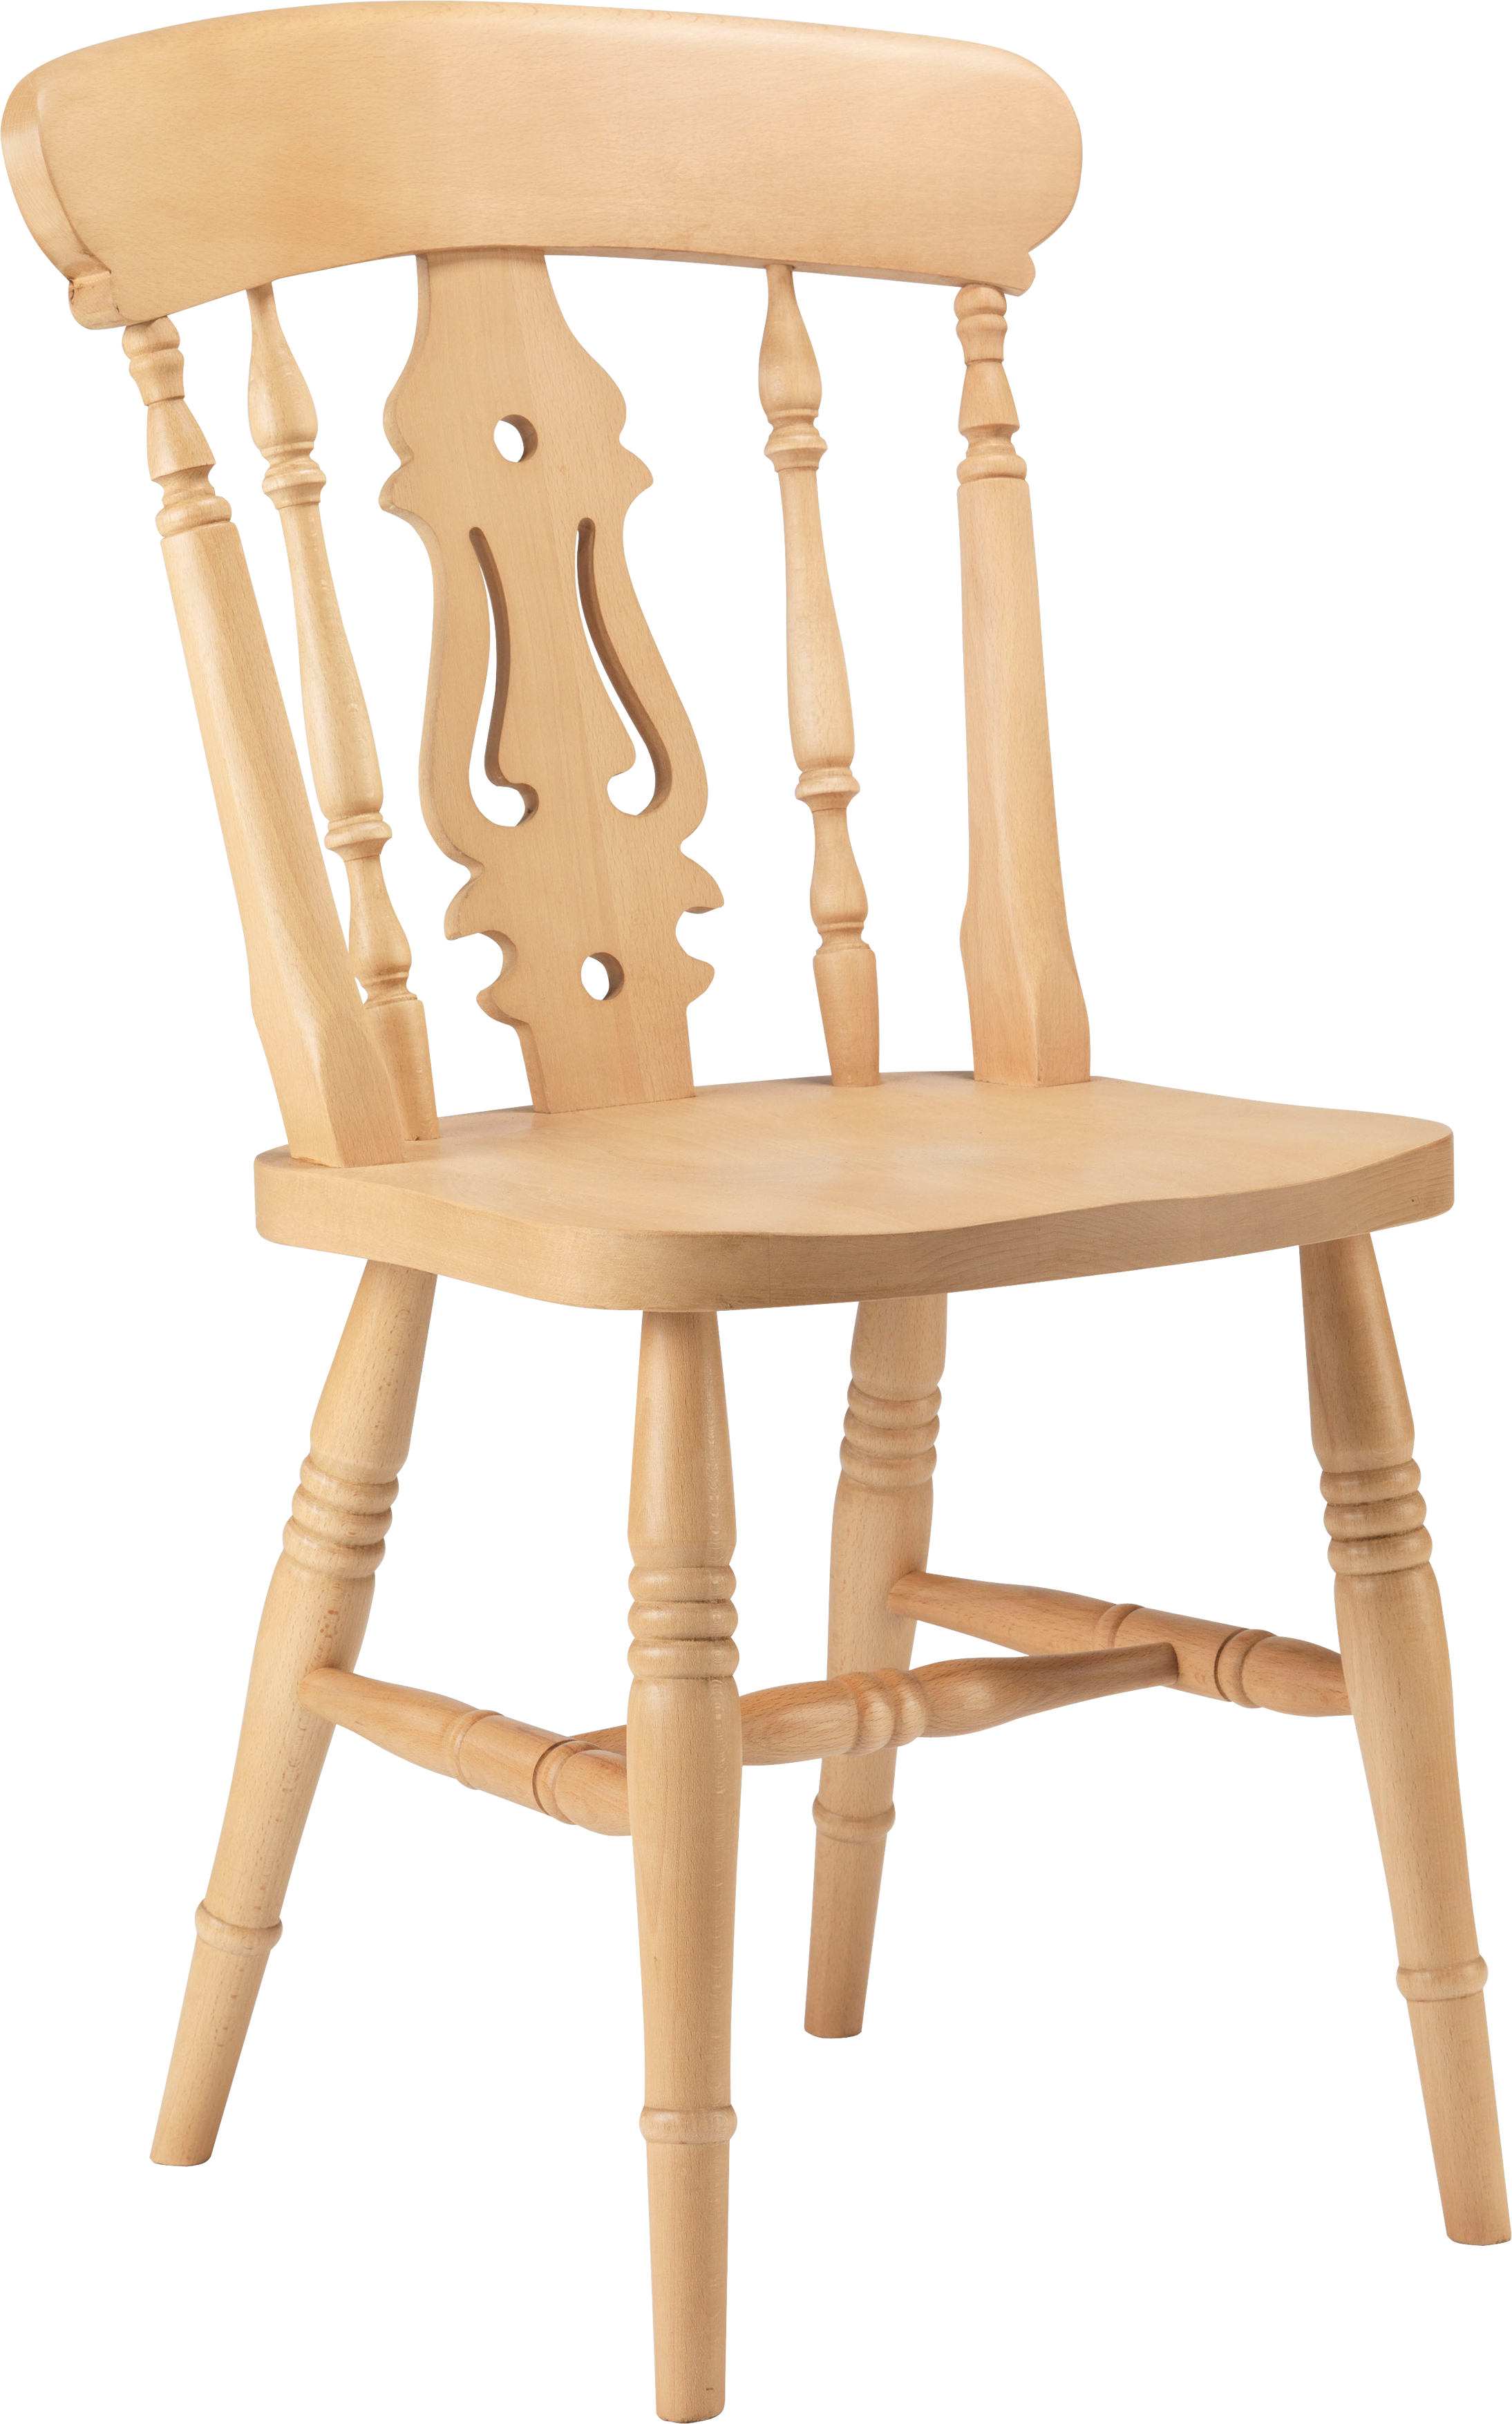 Ghế bành PNG có thiết kế đơn giản nhưng rất tiện dụng và phù hợp với nhiều phong cách nội thất khác nhau. Bạn có thể sử dụng nó để ngồi đọc sách, xem phim hoặc thư giãn trong phòng khách. Hãy xem ảnh và khám phá thêm những tính năng đặc biệt của chiếc ghế này.